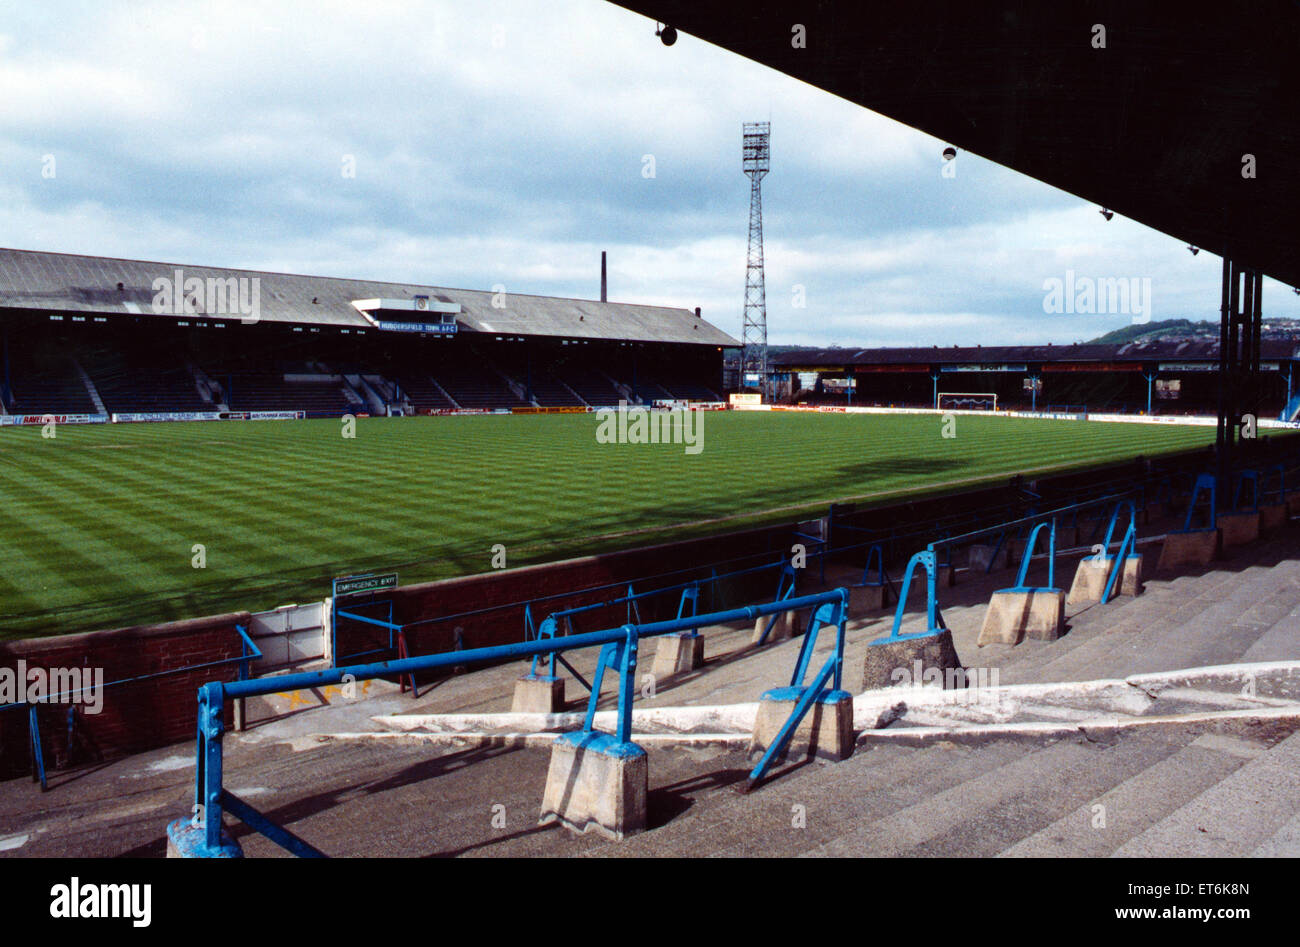 Leeds Road ist ein Fußballstadion in Huddersfield. Sie bedient von seinem Bau im Jahre 1908 bis Alfred McAlpine Stadium in der Nähe der 1994 eröffnete? 95 Saison. Es war die Heimat von Huddersfield Town FC 24. Februar 1993. Stockfoto